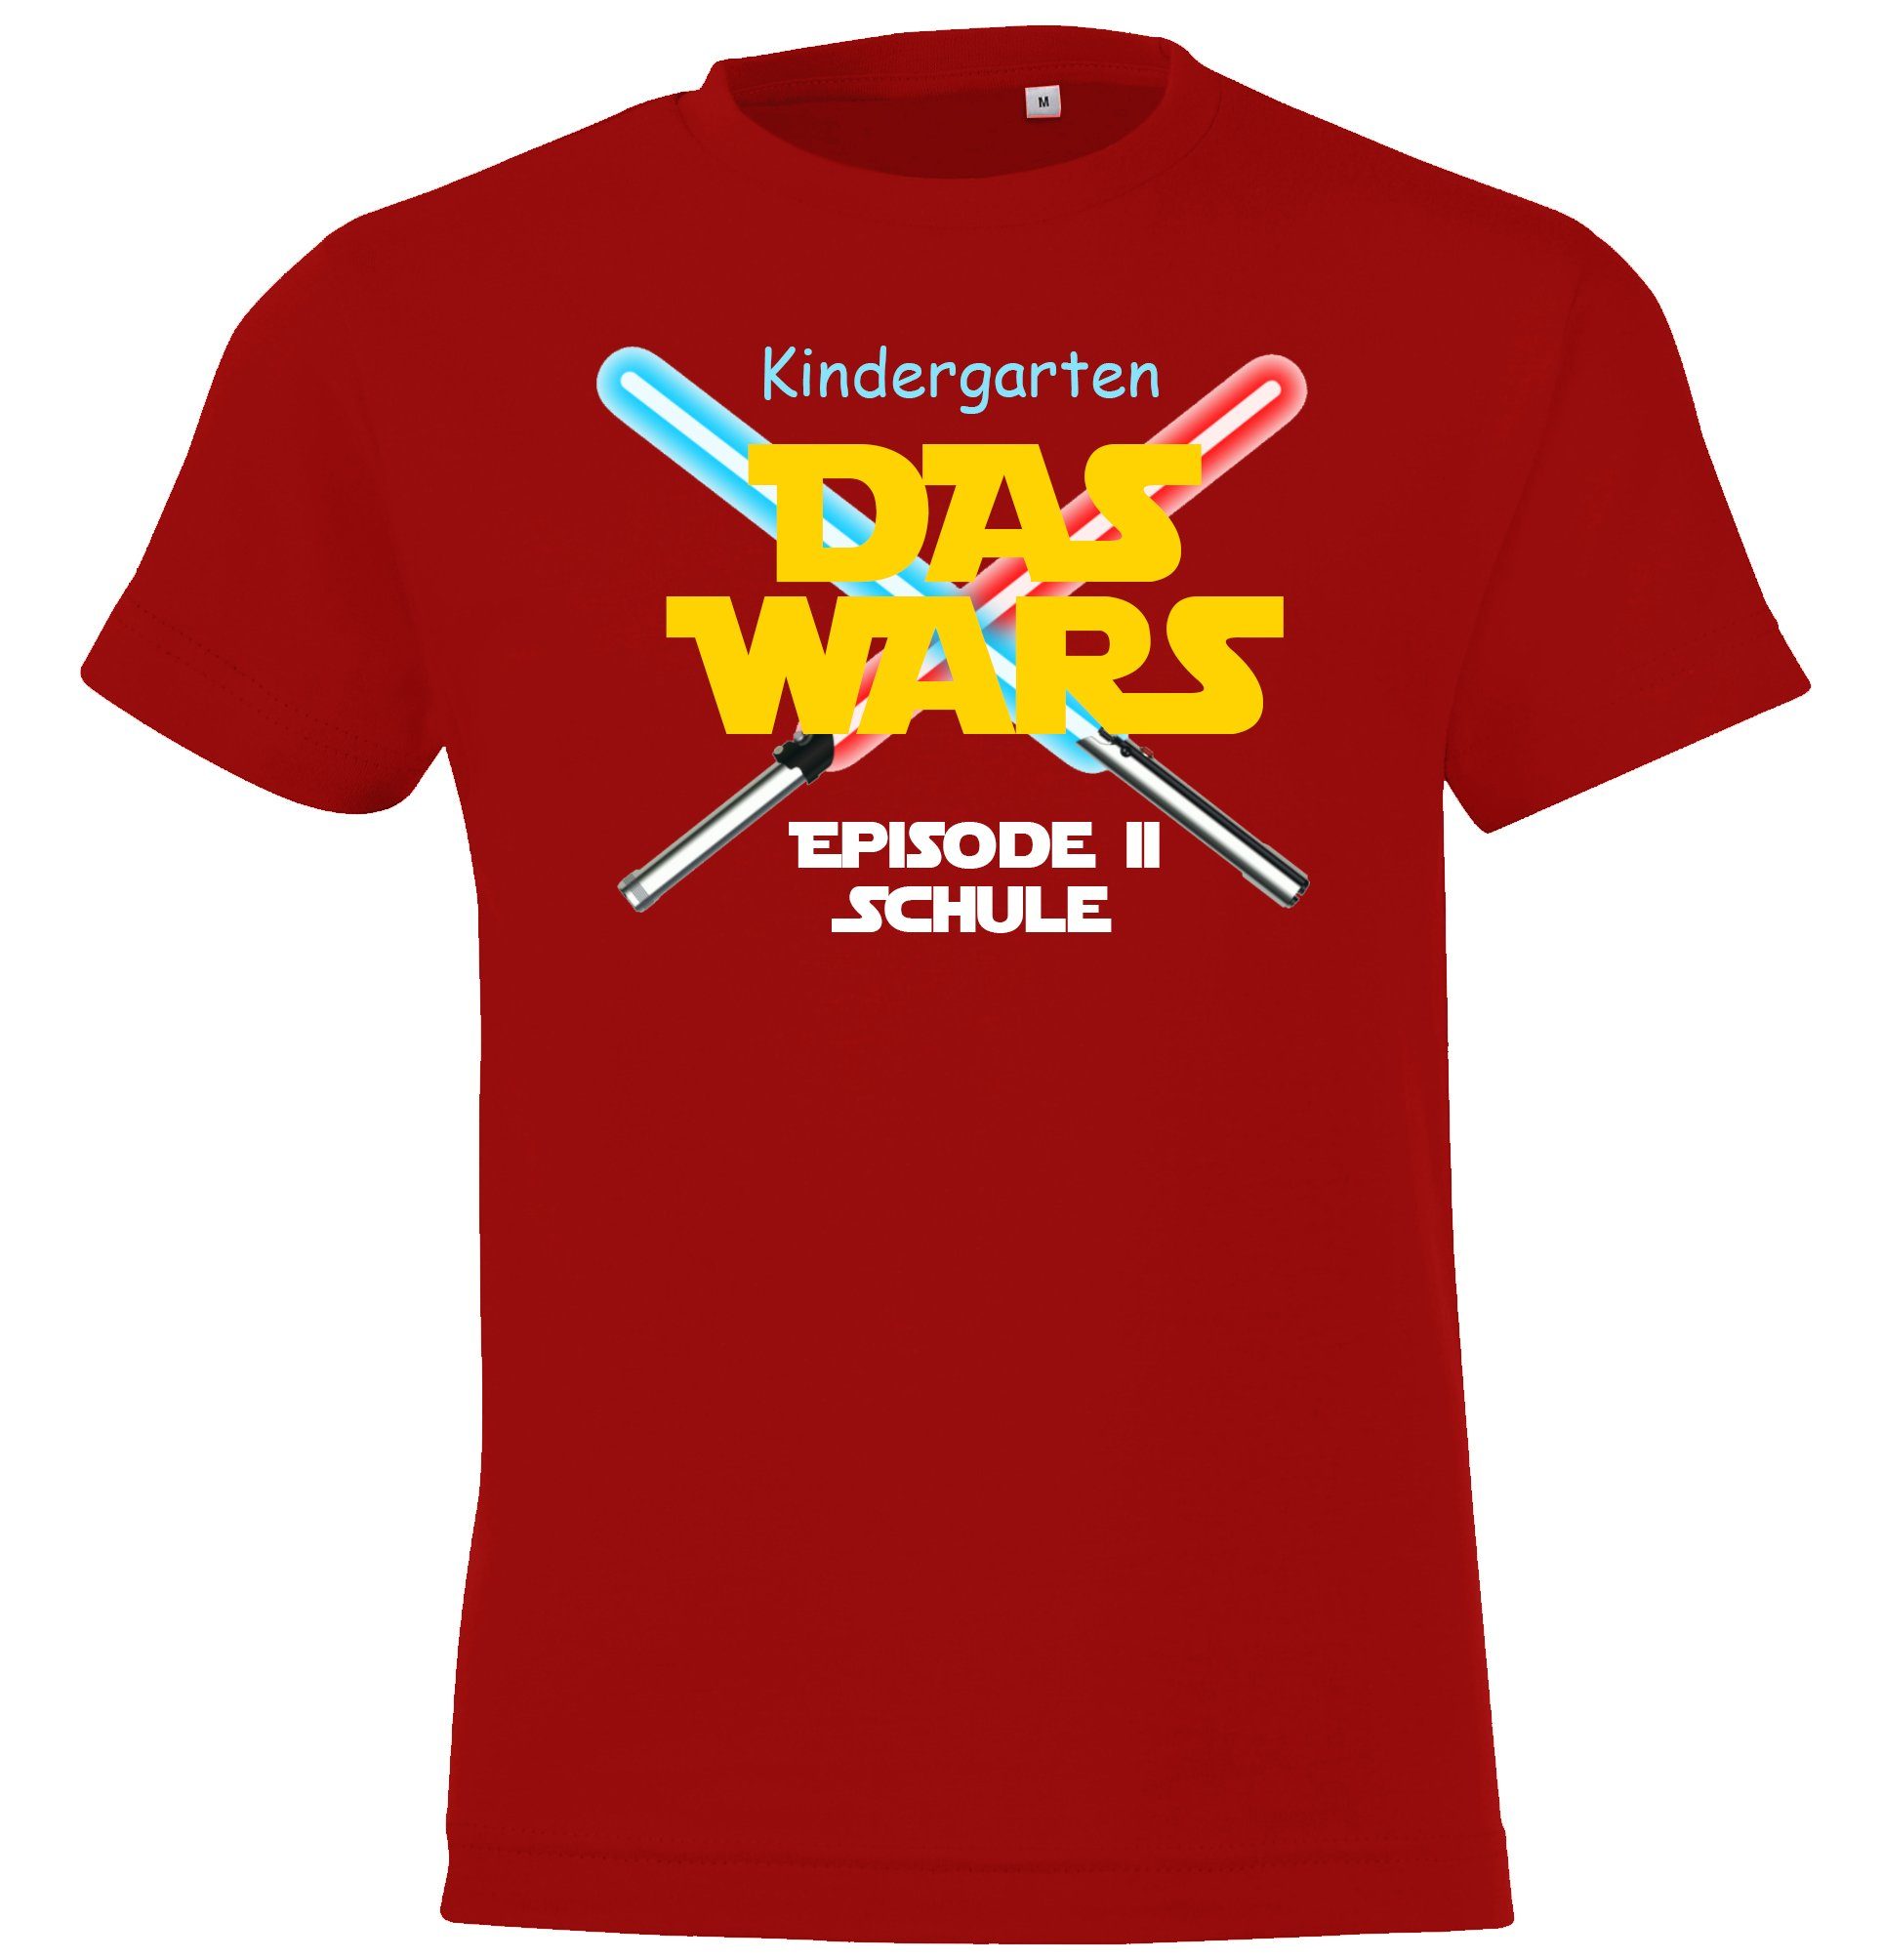 Motiv mit Einschulungs Das Shirt lustigem Designz Kinder Rot Youth Kindergarten Wars T-Shirt